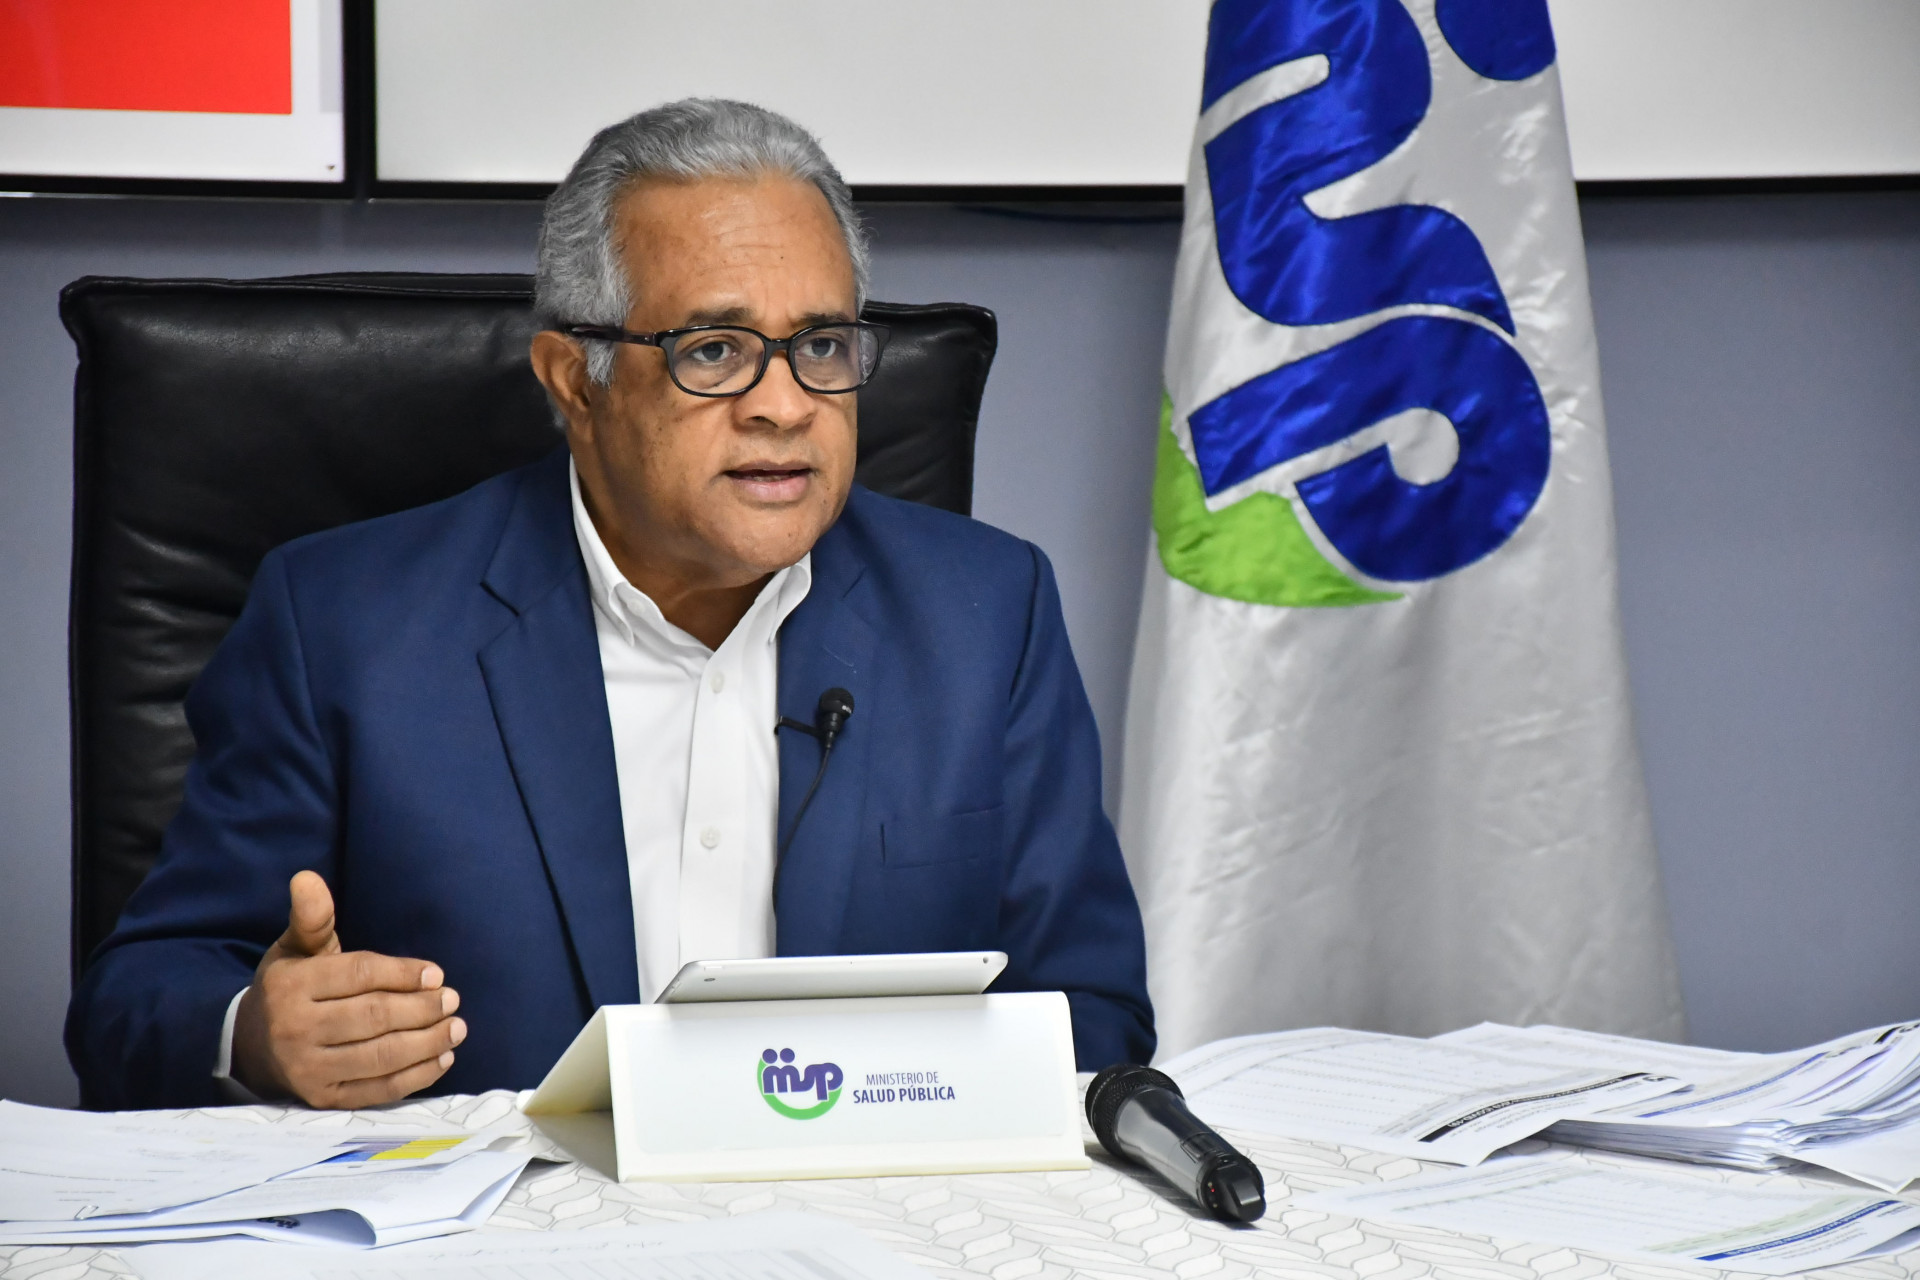 REPÚBLICA DOMINICANA: Ministerio de Salud ejecutará, este jueves, plan reducción incidencia COVID-19 en Distrito Nacional; saluda acciones La Vega y Ocoa